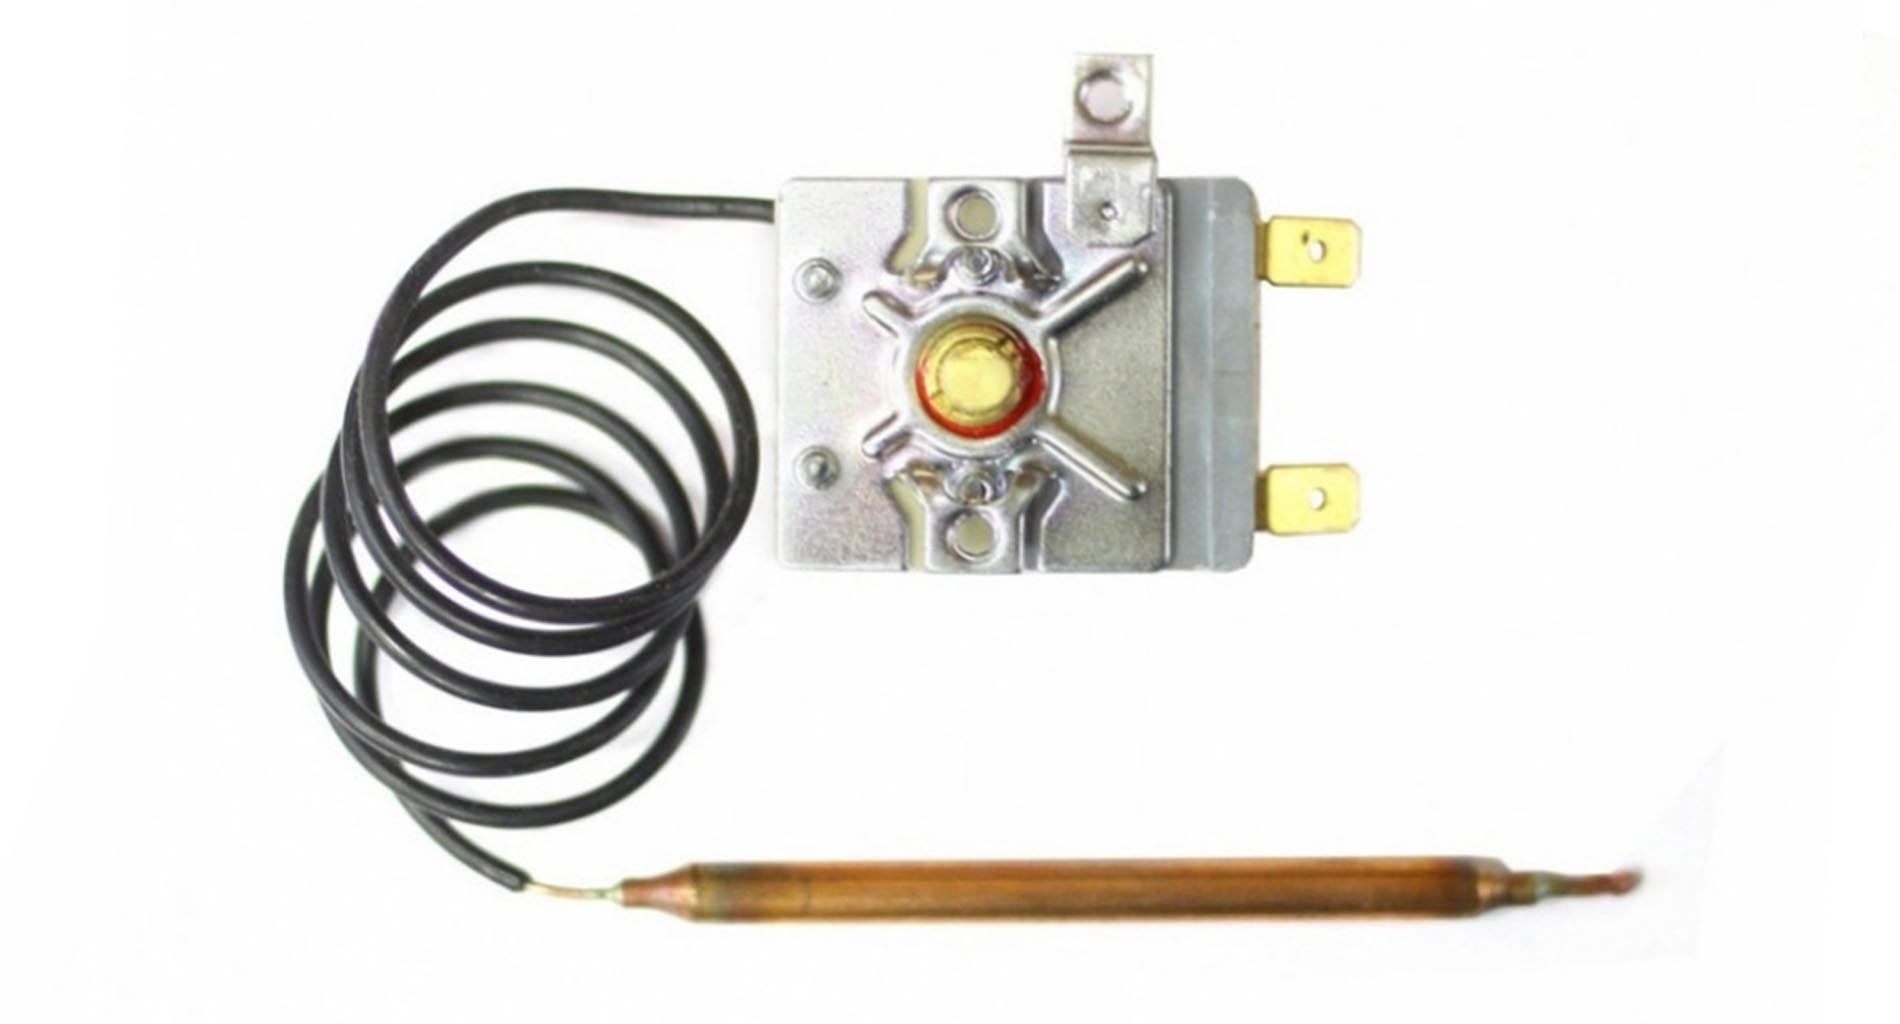 Термостат регулируемый, капиллярный для водонагревателя Thermex RZL, RZB, IR, IF, 50, 80, 100 литров